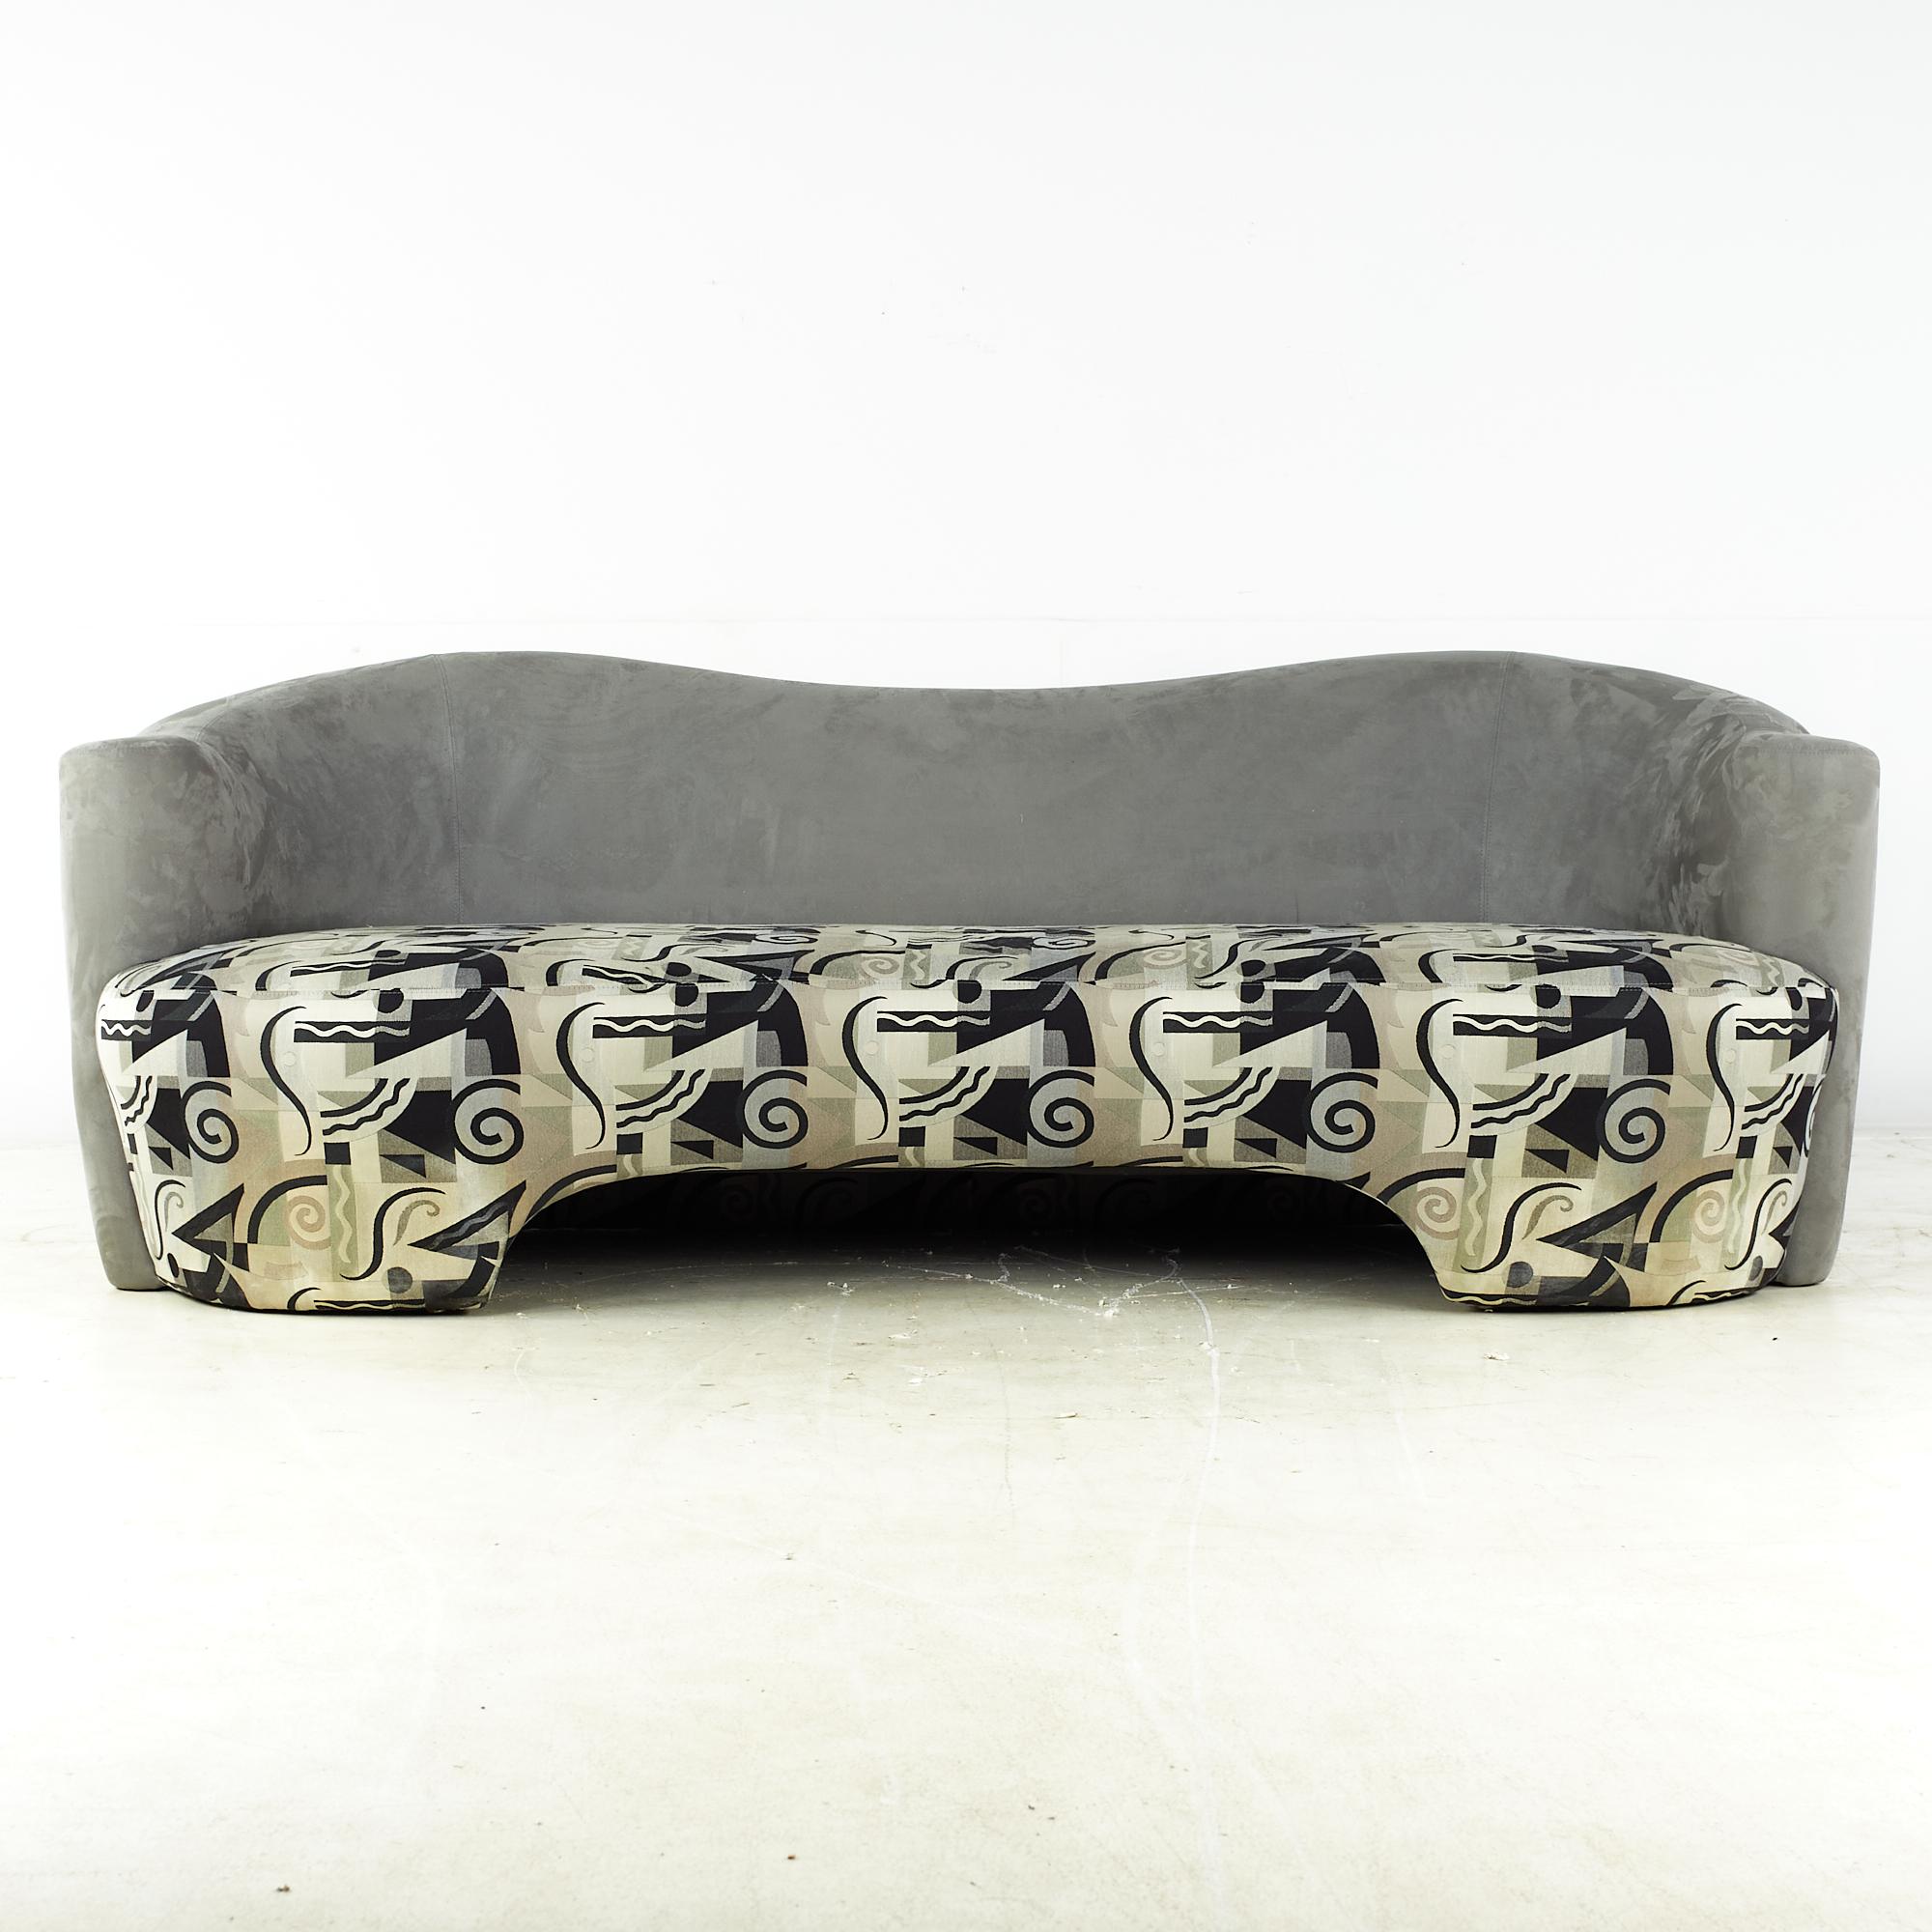 Canapé sculptural incurvé de style Weiman du milieu du siècle, Vladimir Kagan

Ce canapé mesure : 93 de large x 43 de profond x 33 de haut, avec une hauteur d'assise de 17 et une hauteur d'accoudoir de 28 pouces.

Tous les meubles peuvent être